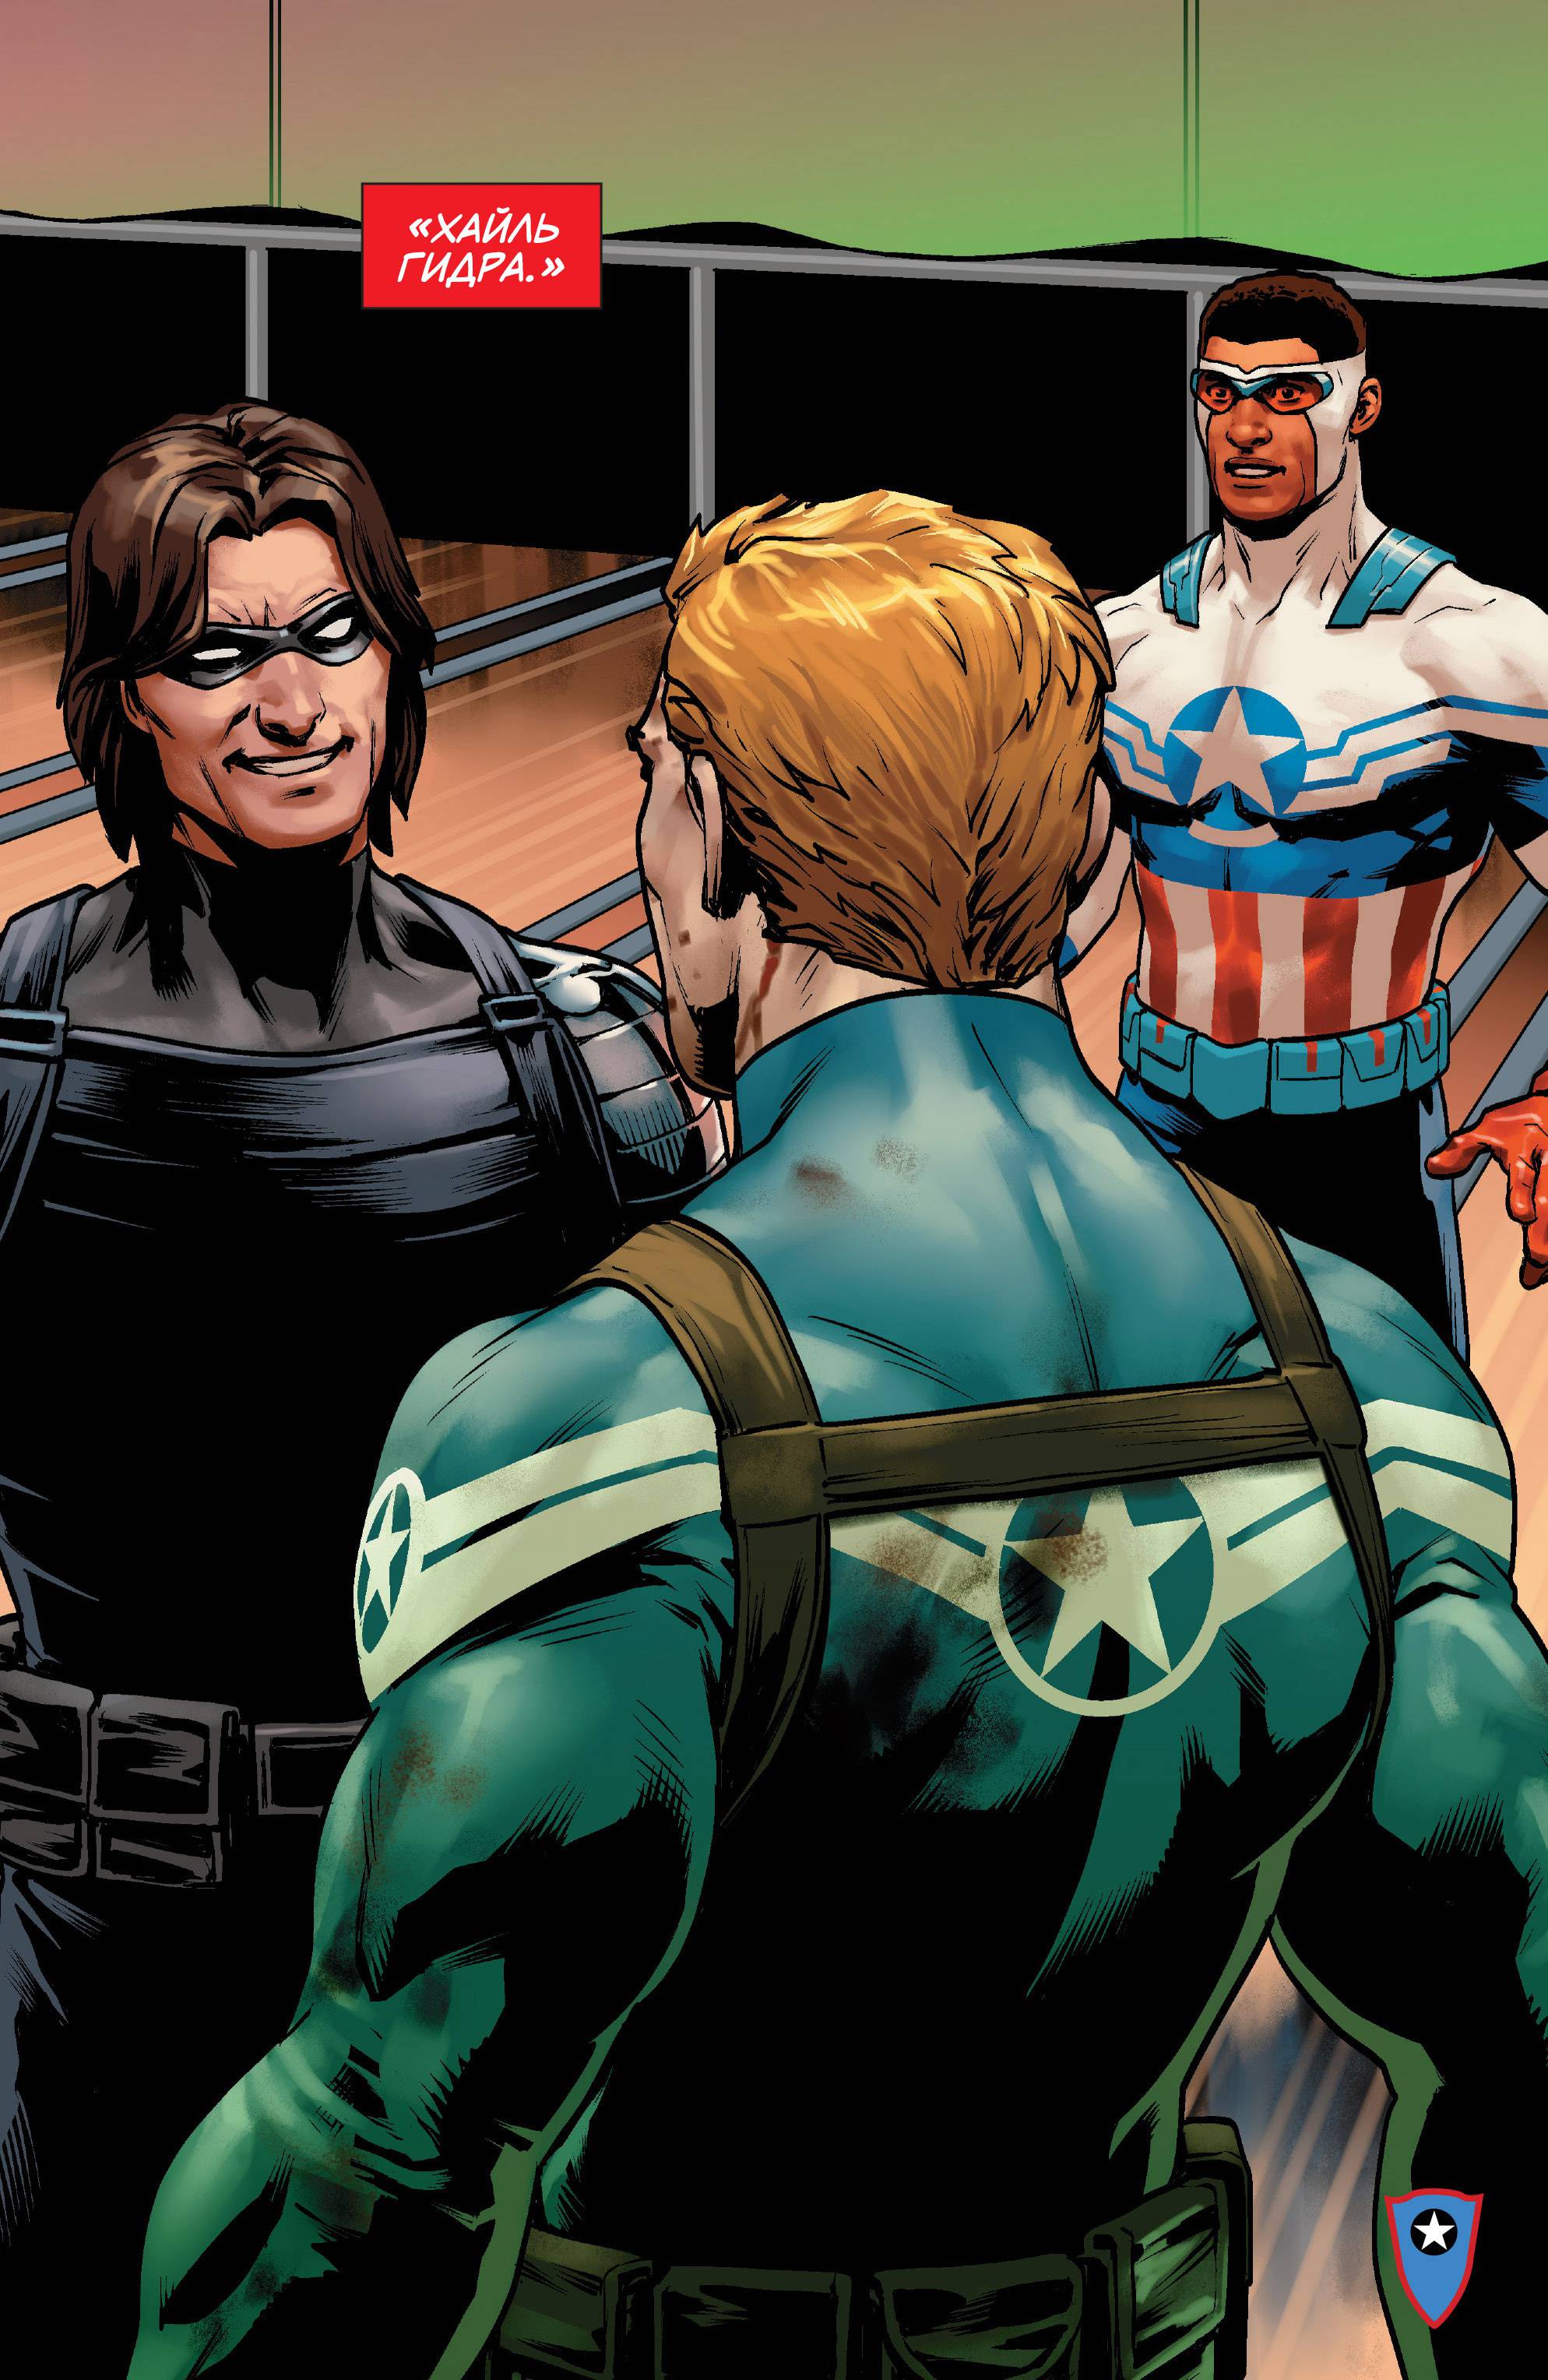 Капитан Америка: Стив Роджерс №2 онлайн